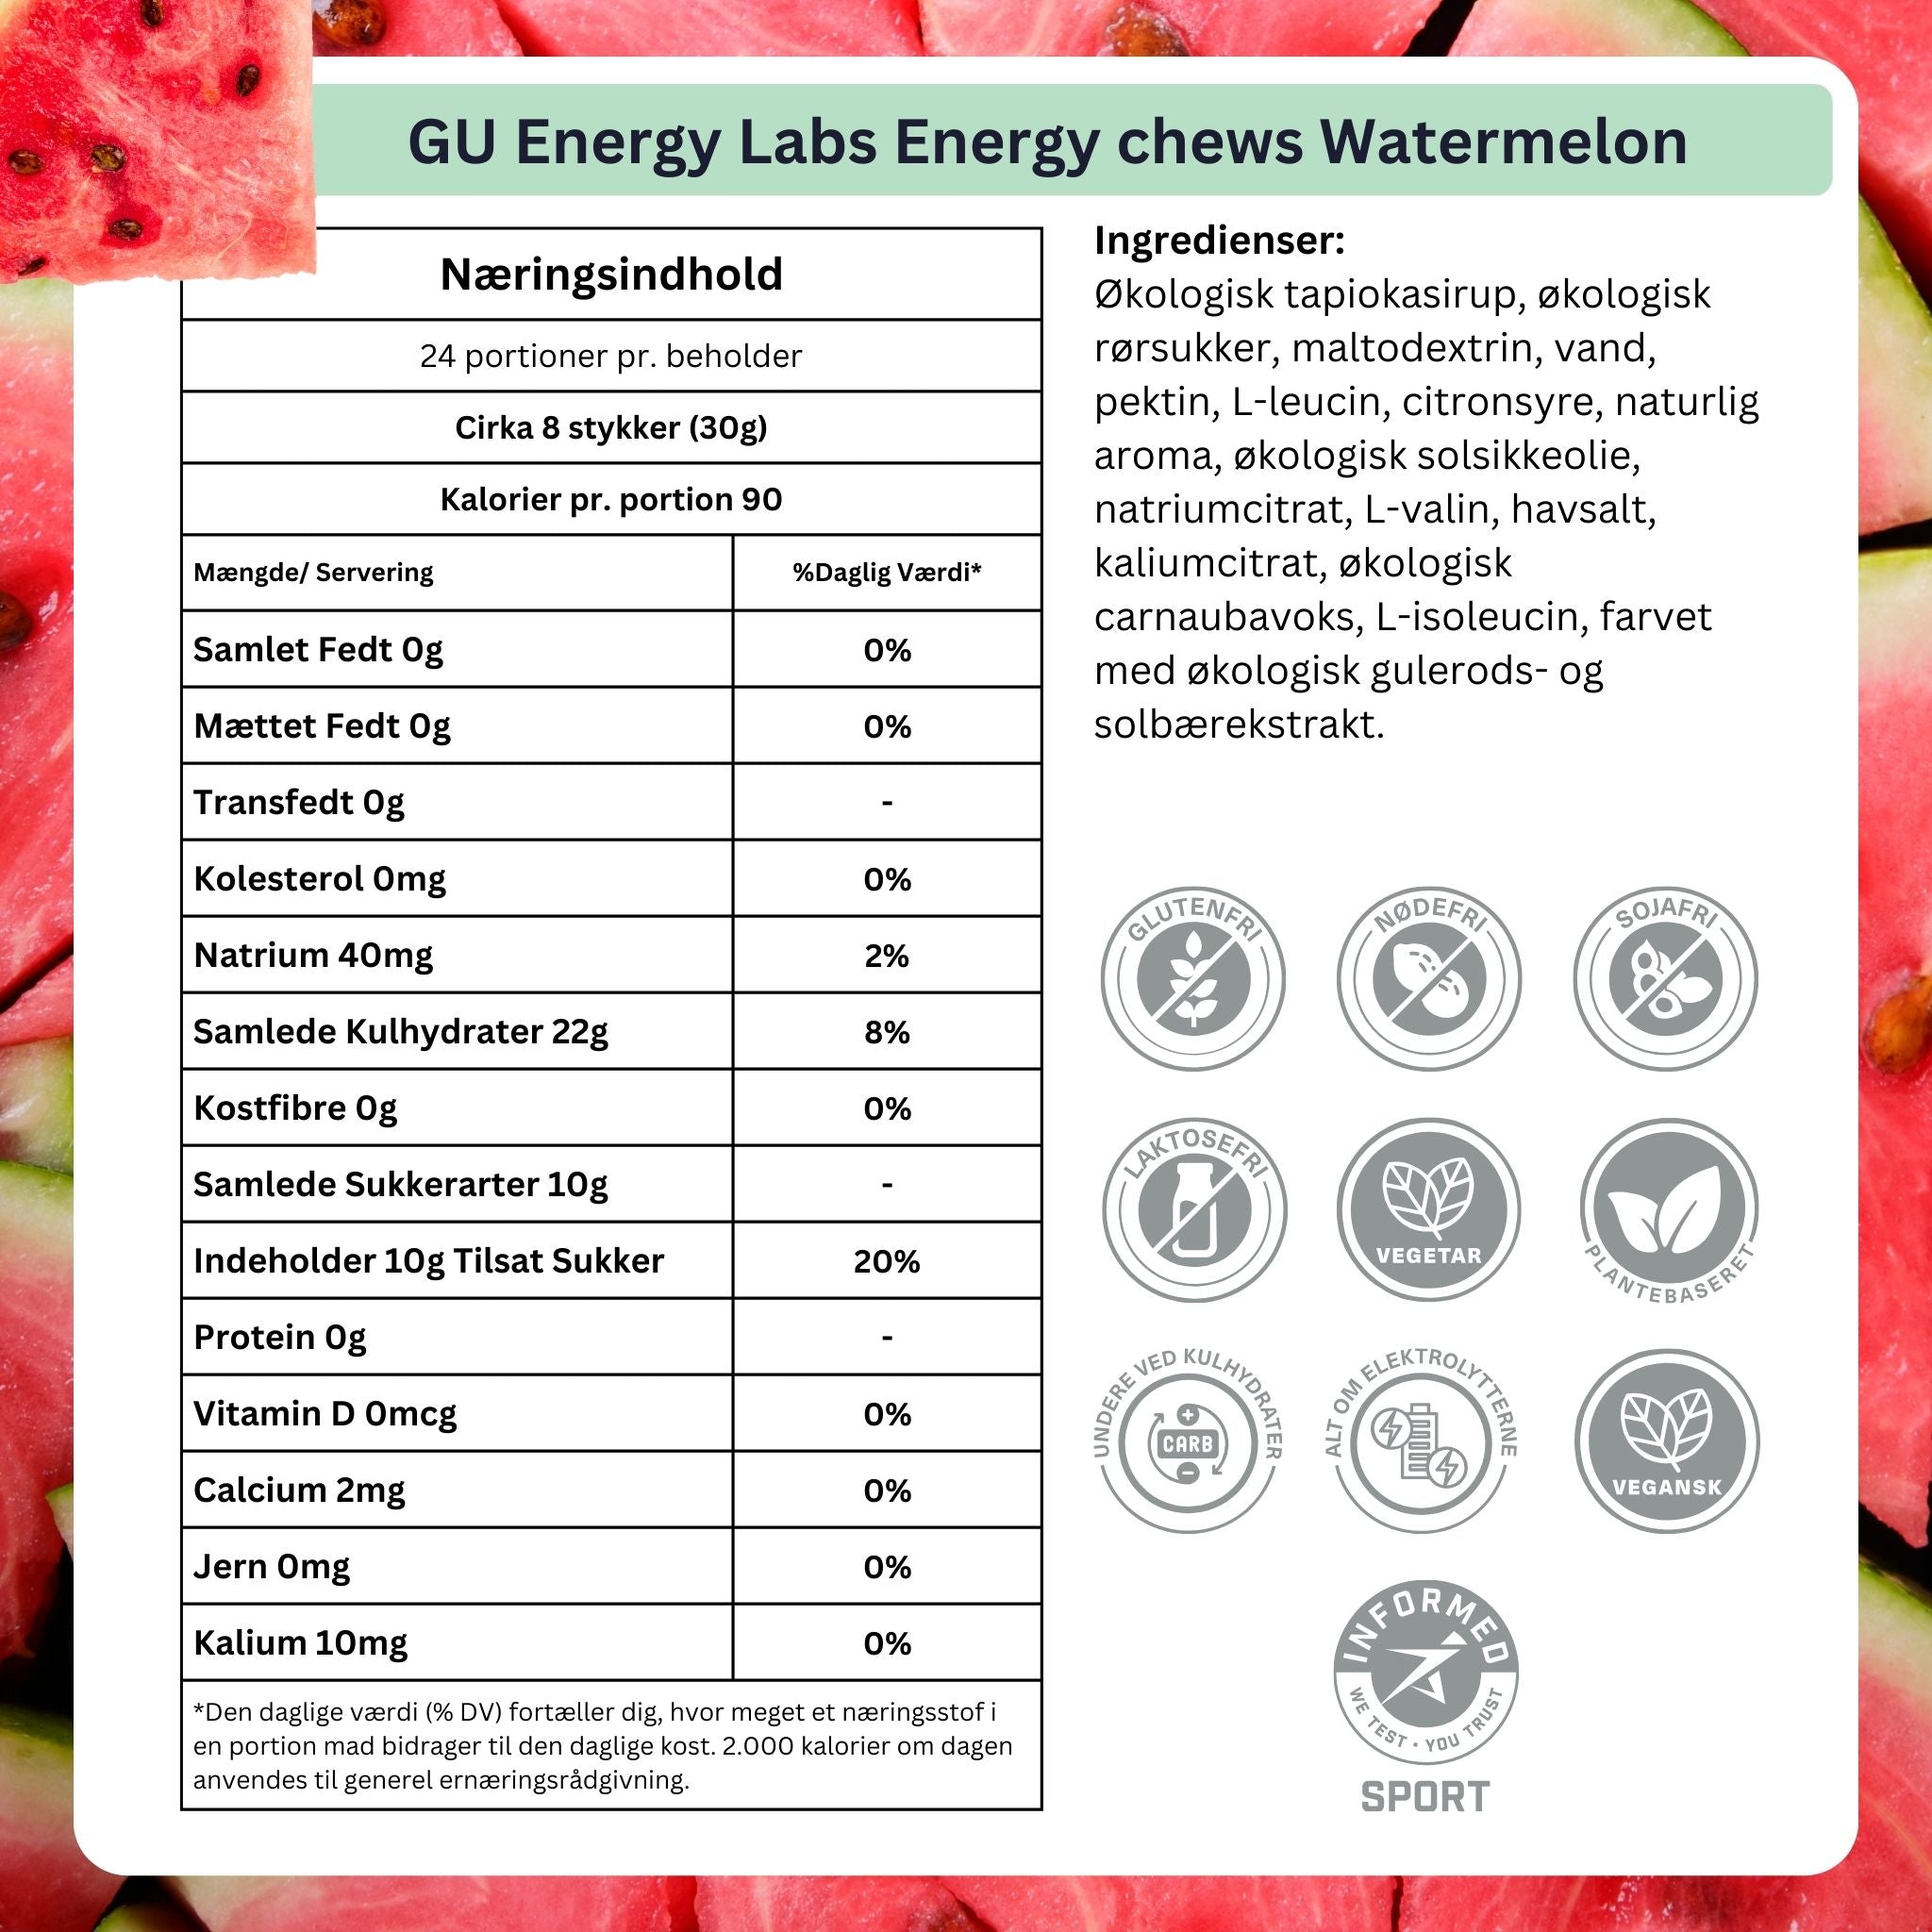 GU Energy Chews Watermelon 60g (12 pack) Ingredients